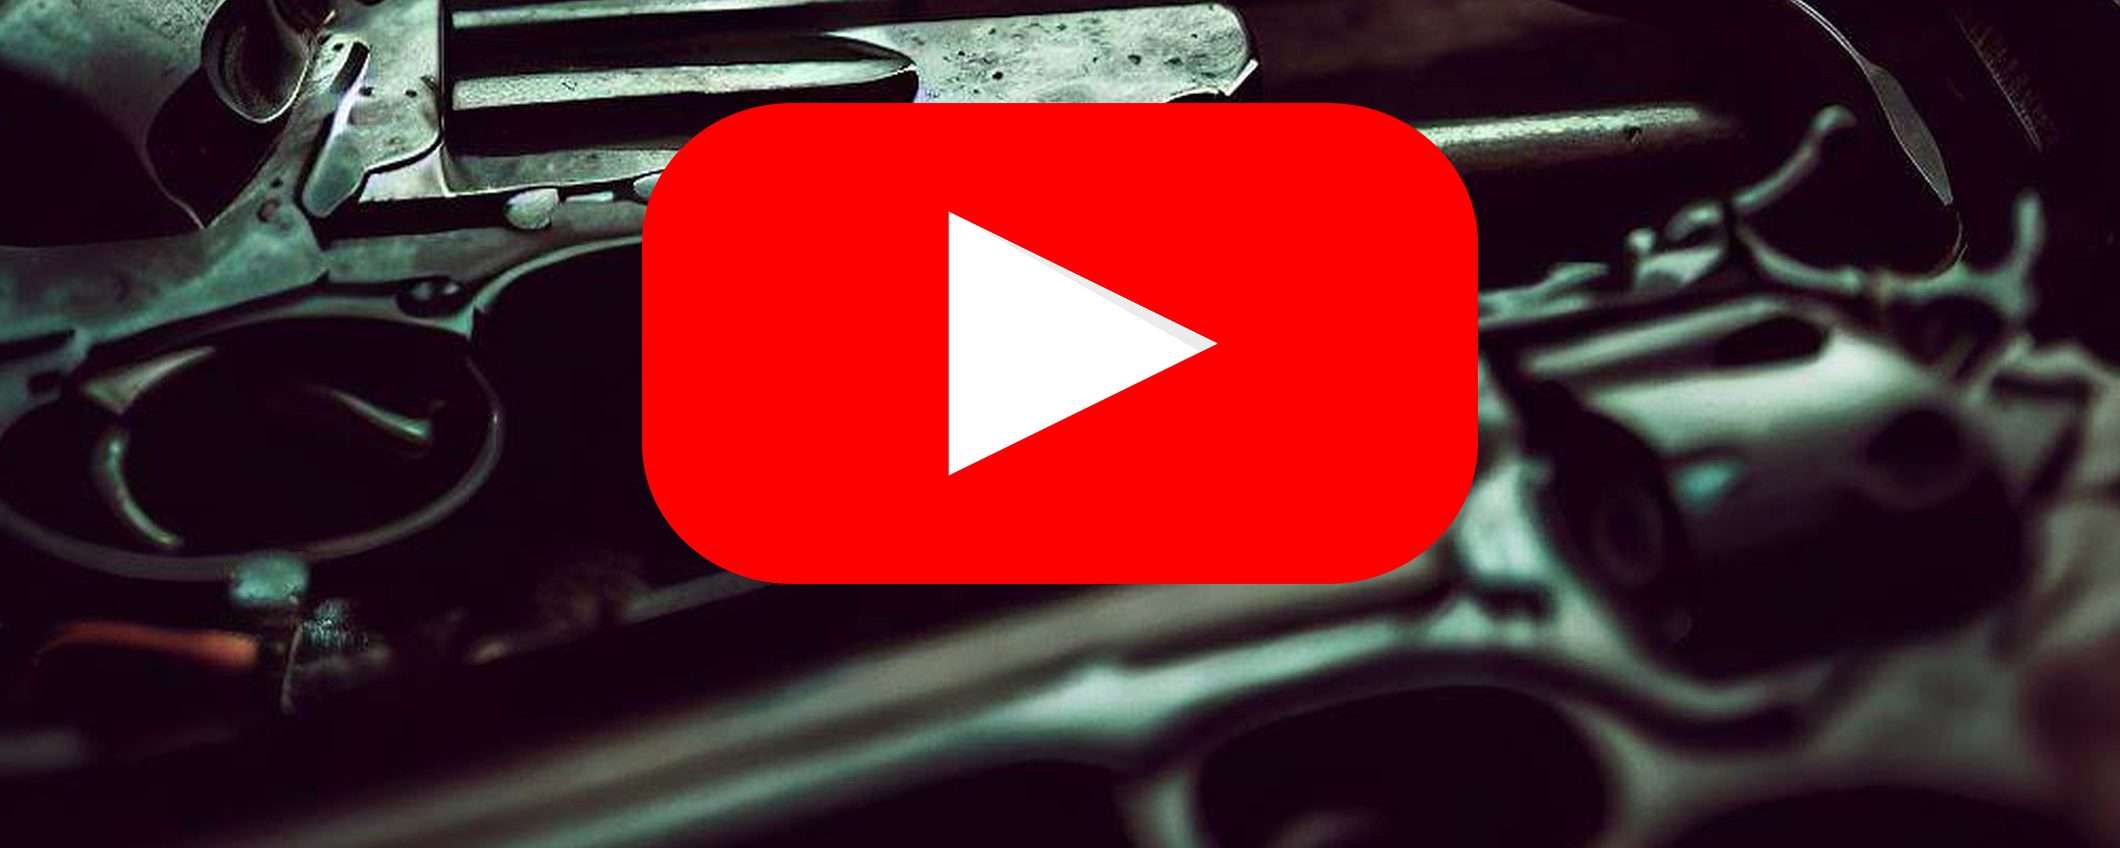 YouTube consiglia video di armi ai minorenni